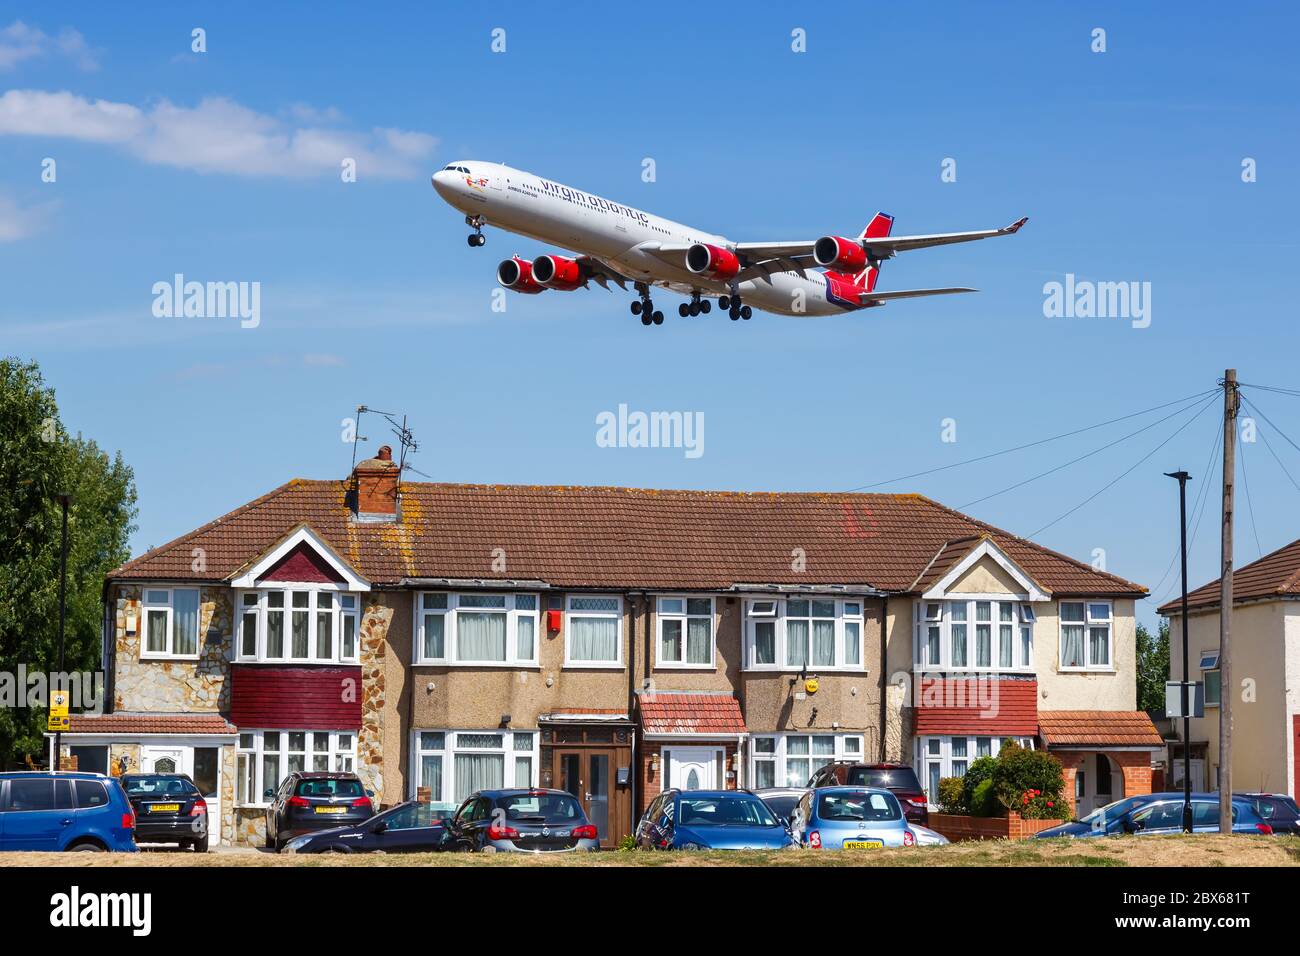 Londres, Royaume-Uni - 1er août 2018 : avion Airbus A340-600 Virgin Atlantic à l'aéroport de Londres Heathrow (LHR) au Royaume-Uni. Banque D'Images